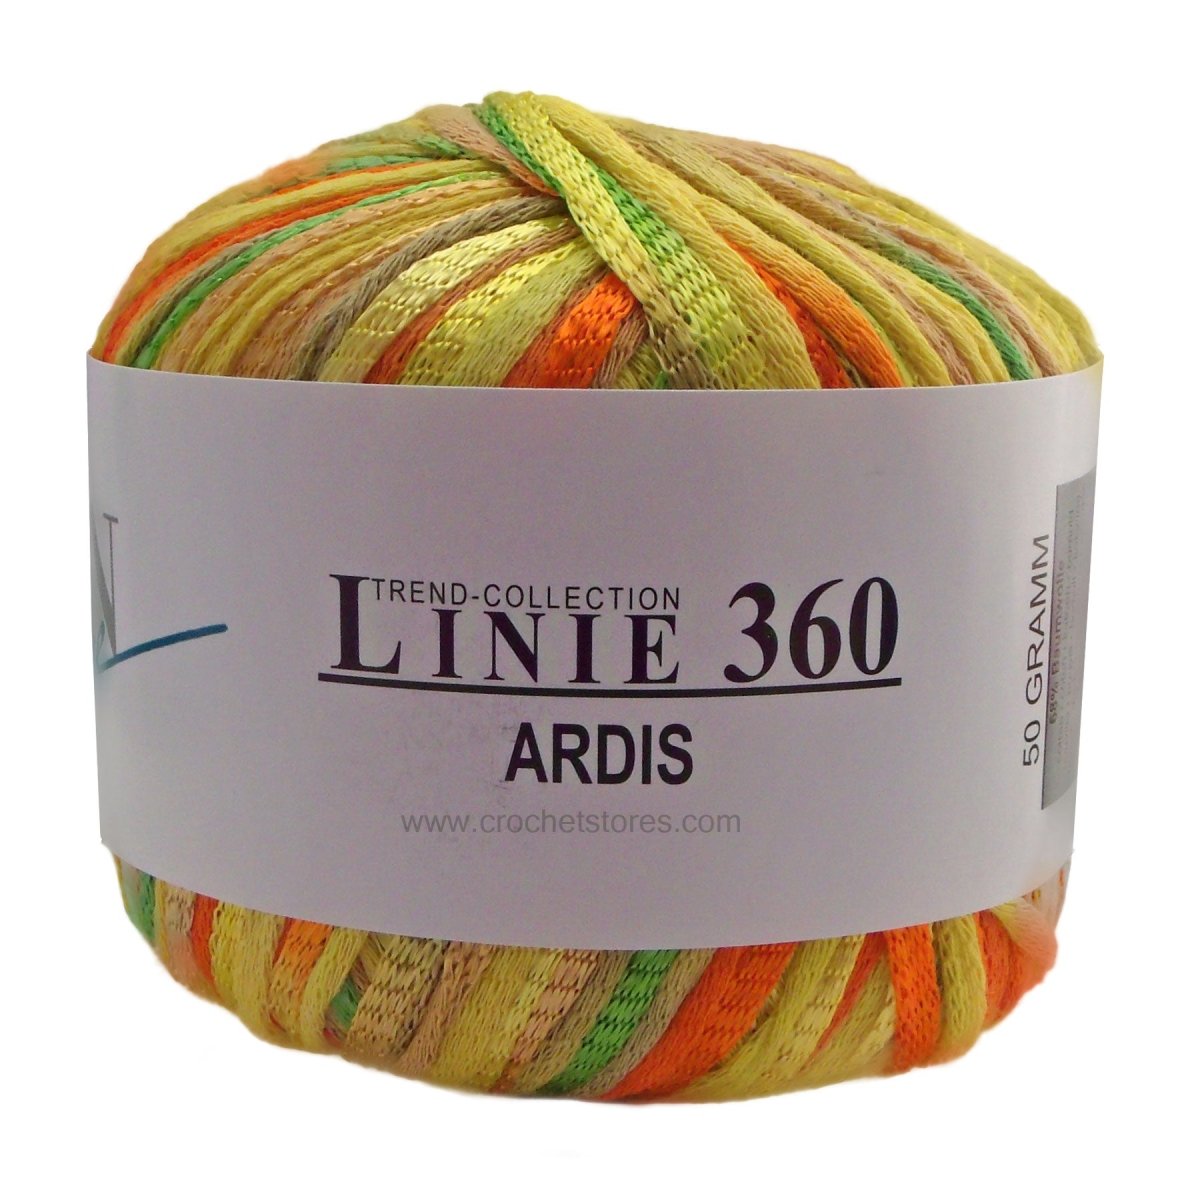 ARDIS - Crochetstores110360-1024014366152750